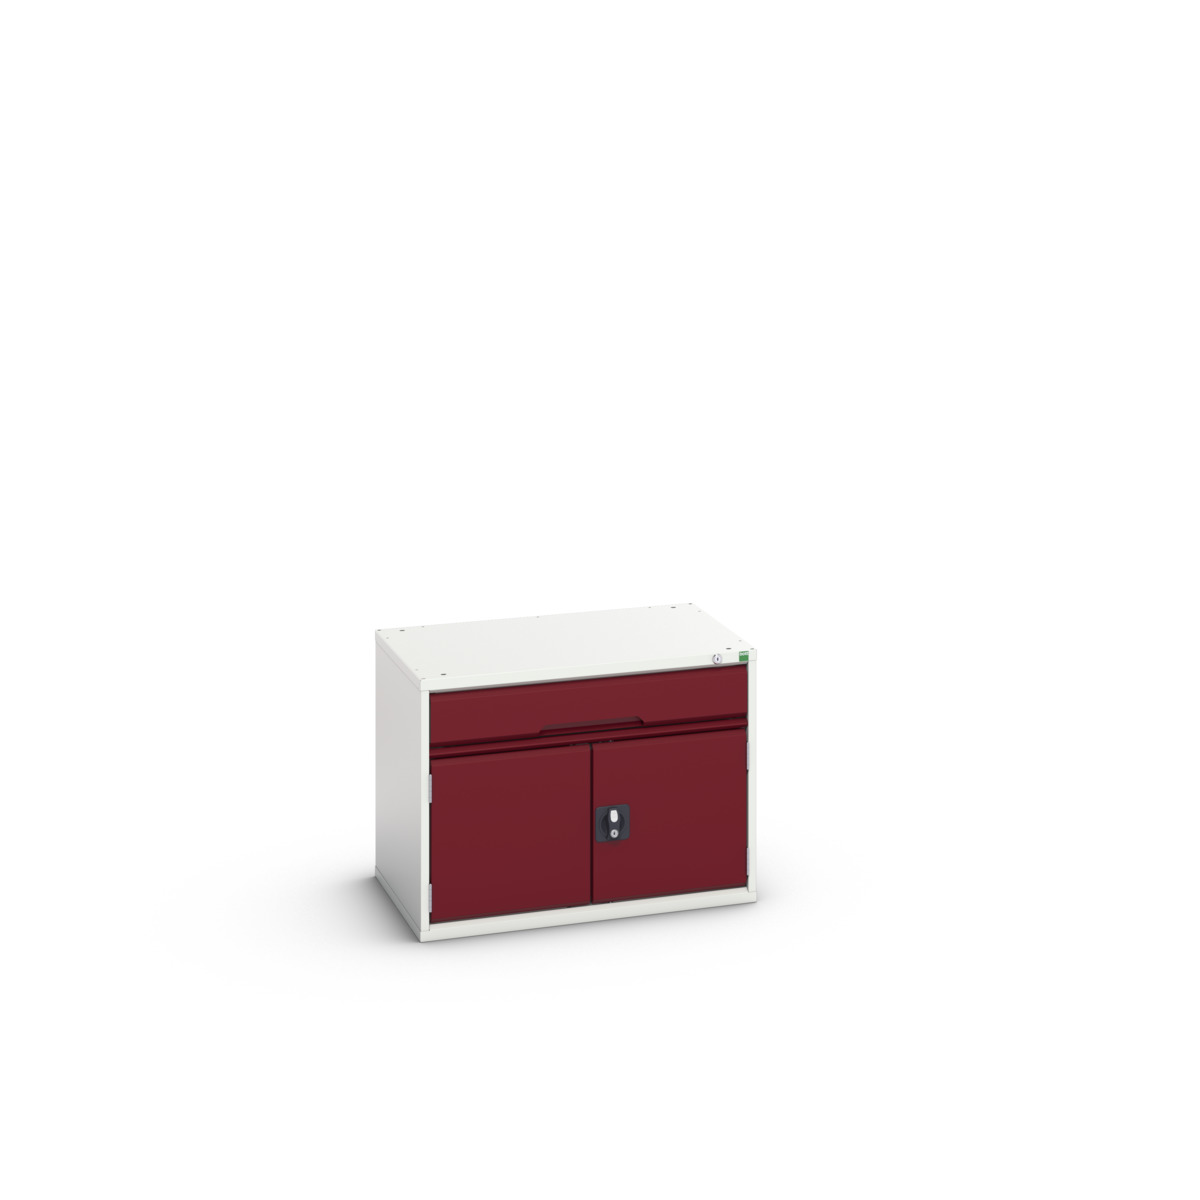 16925106.24 - verso drawer-door cabinet